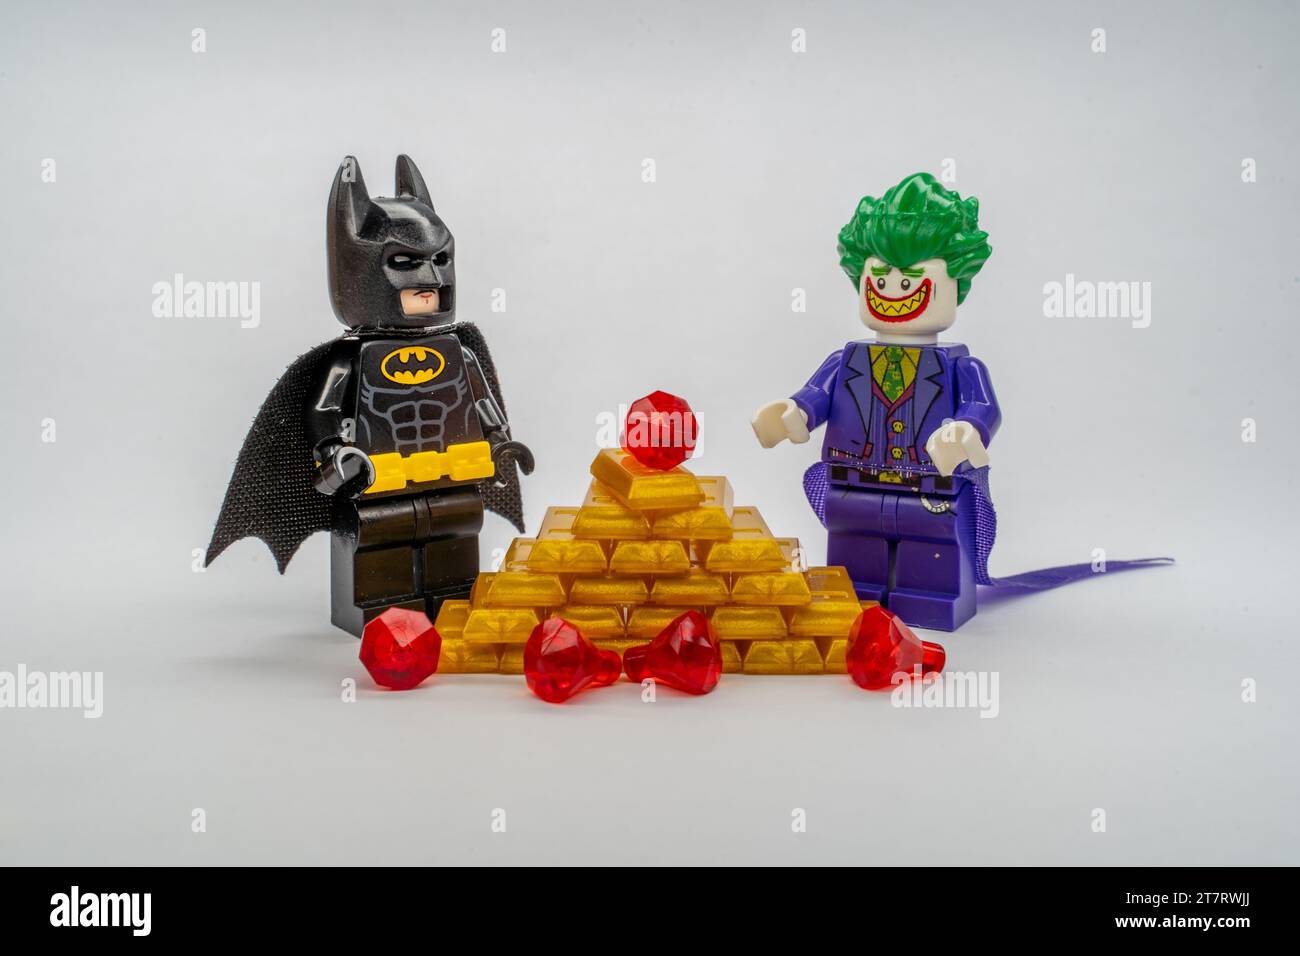 Die LEGO Figuren von Batman und Joker stehen vor einem Stapel goldener LEGO-Stücke. Stockfoto